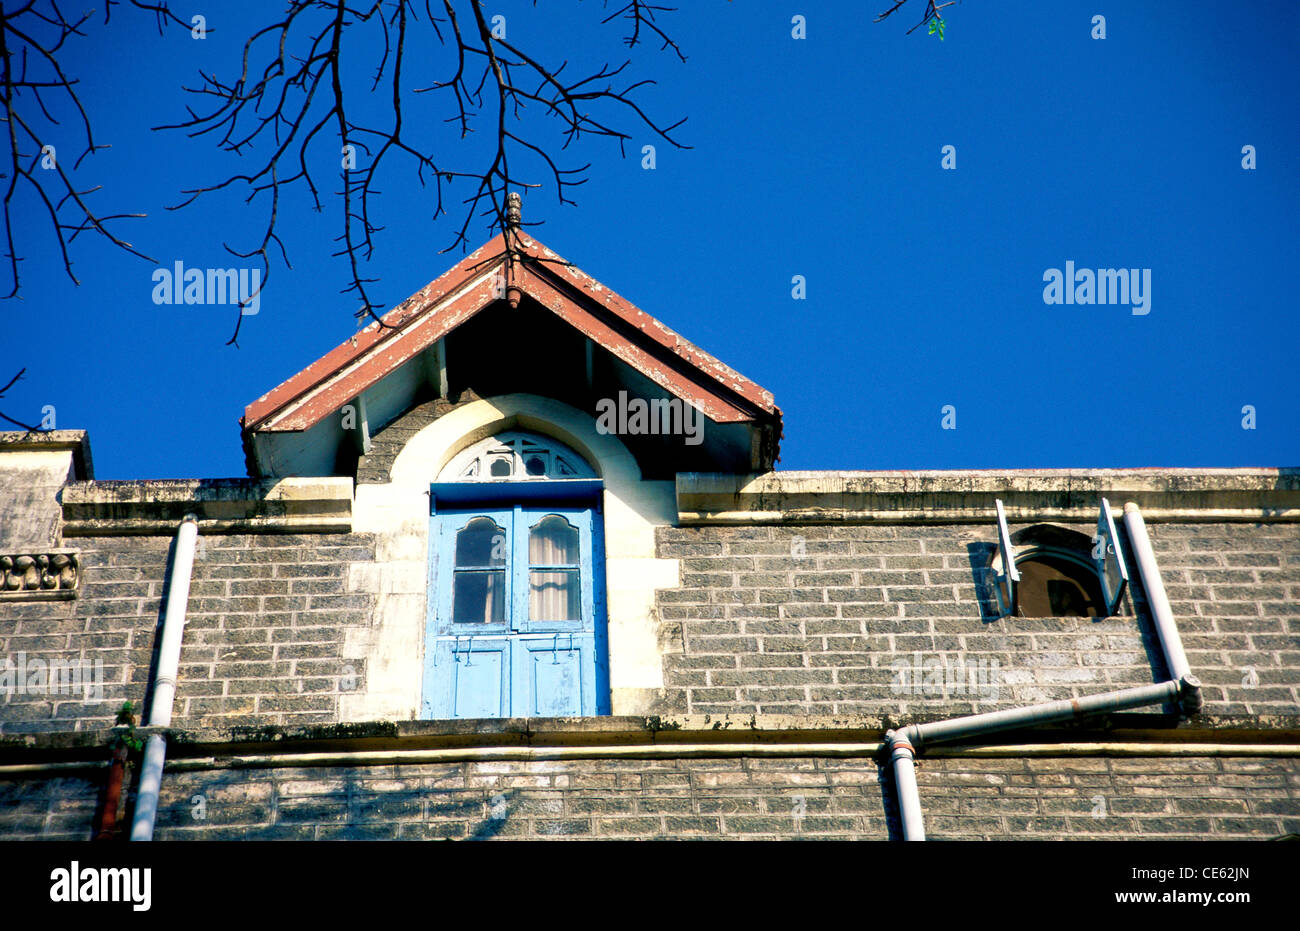 Window triangular roof stone brick wall pipes Xavier's college Bombay Mumbai Maharashtra India Stock Photo